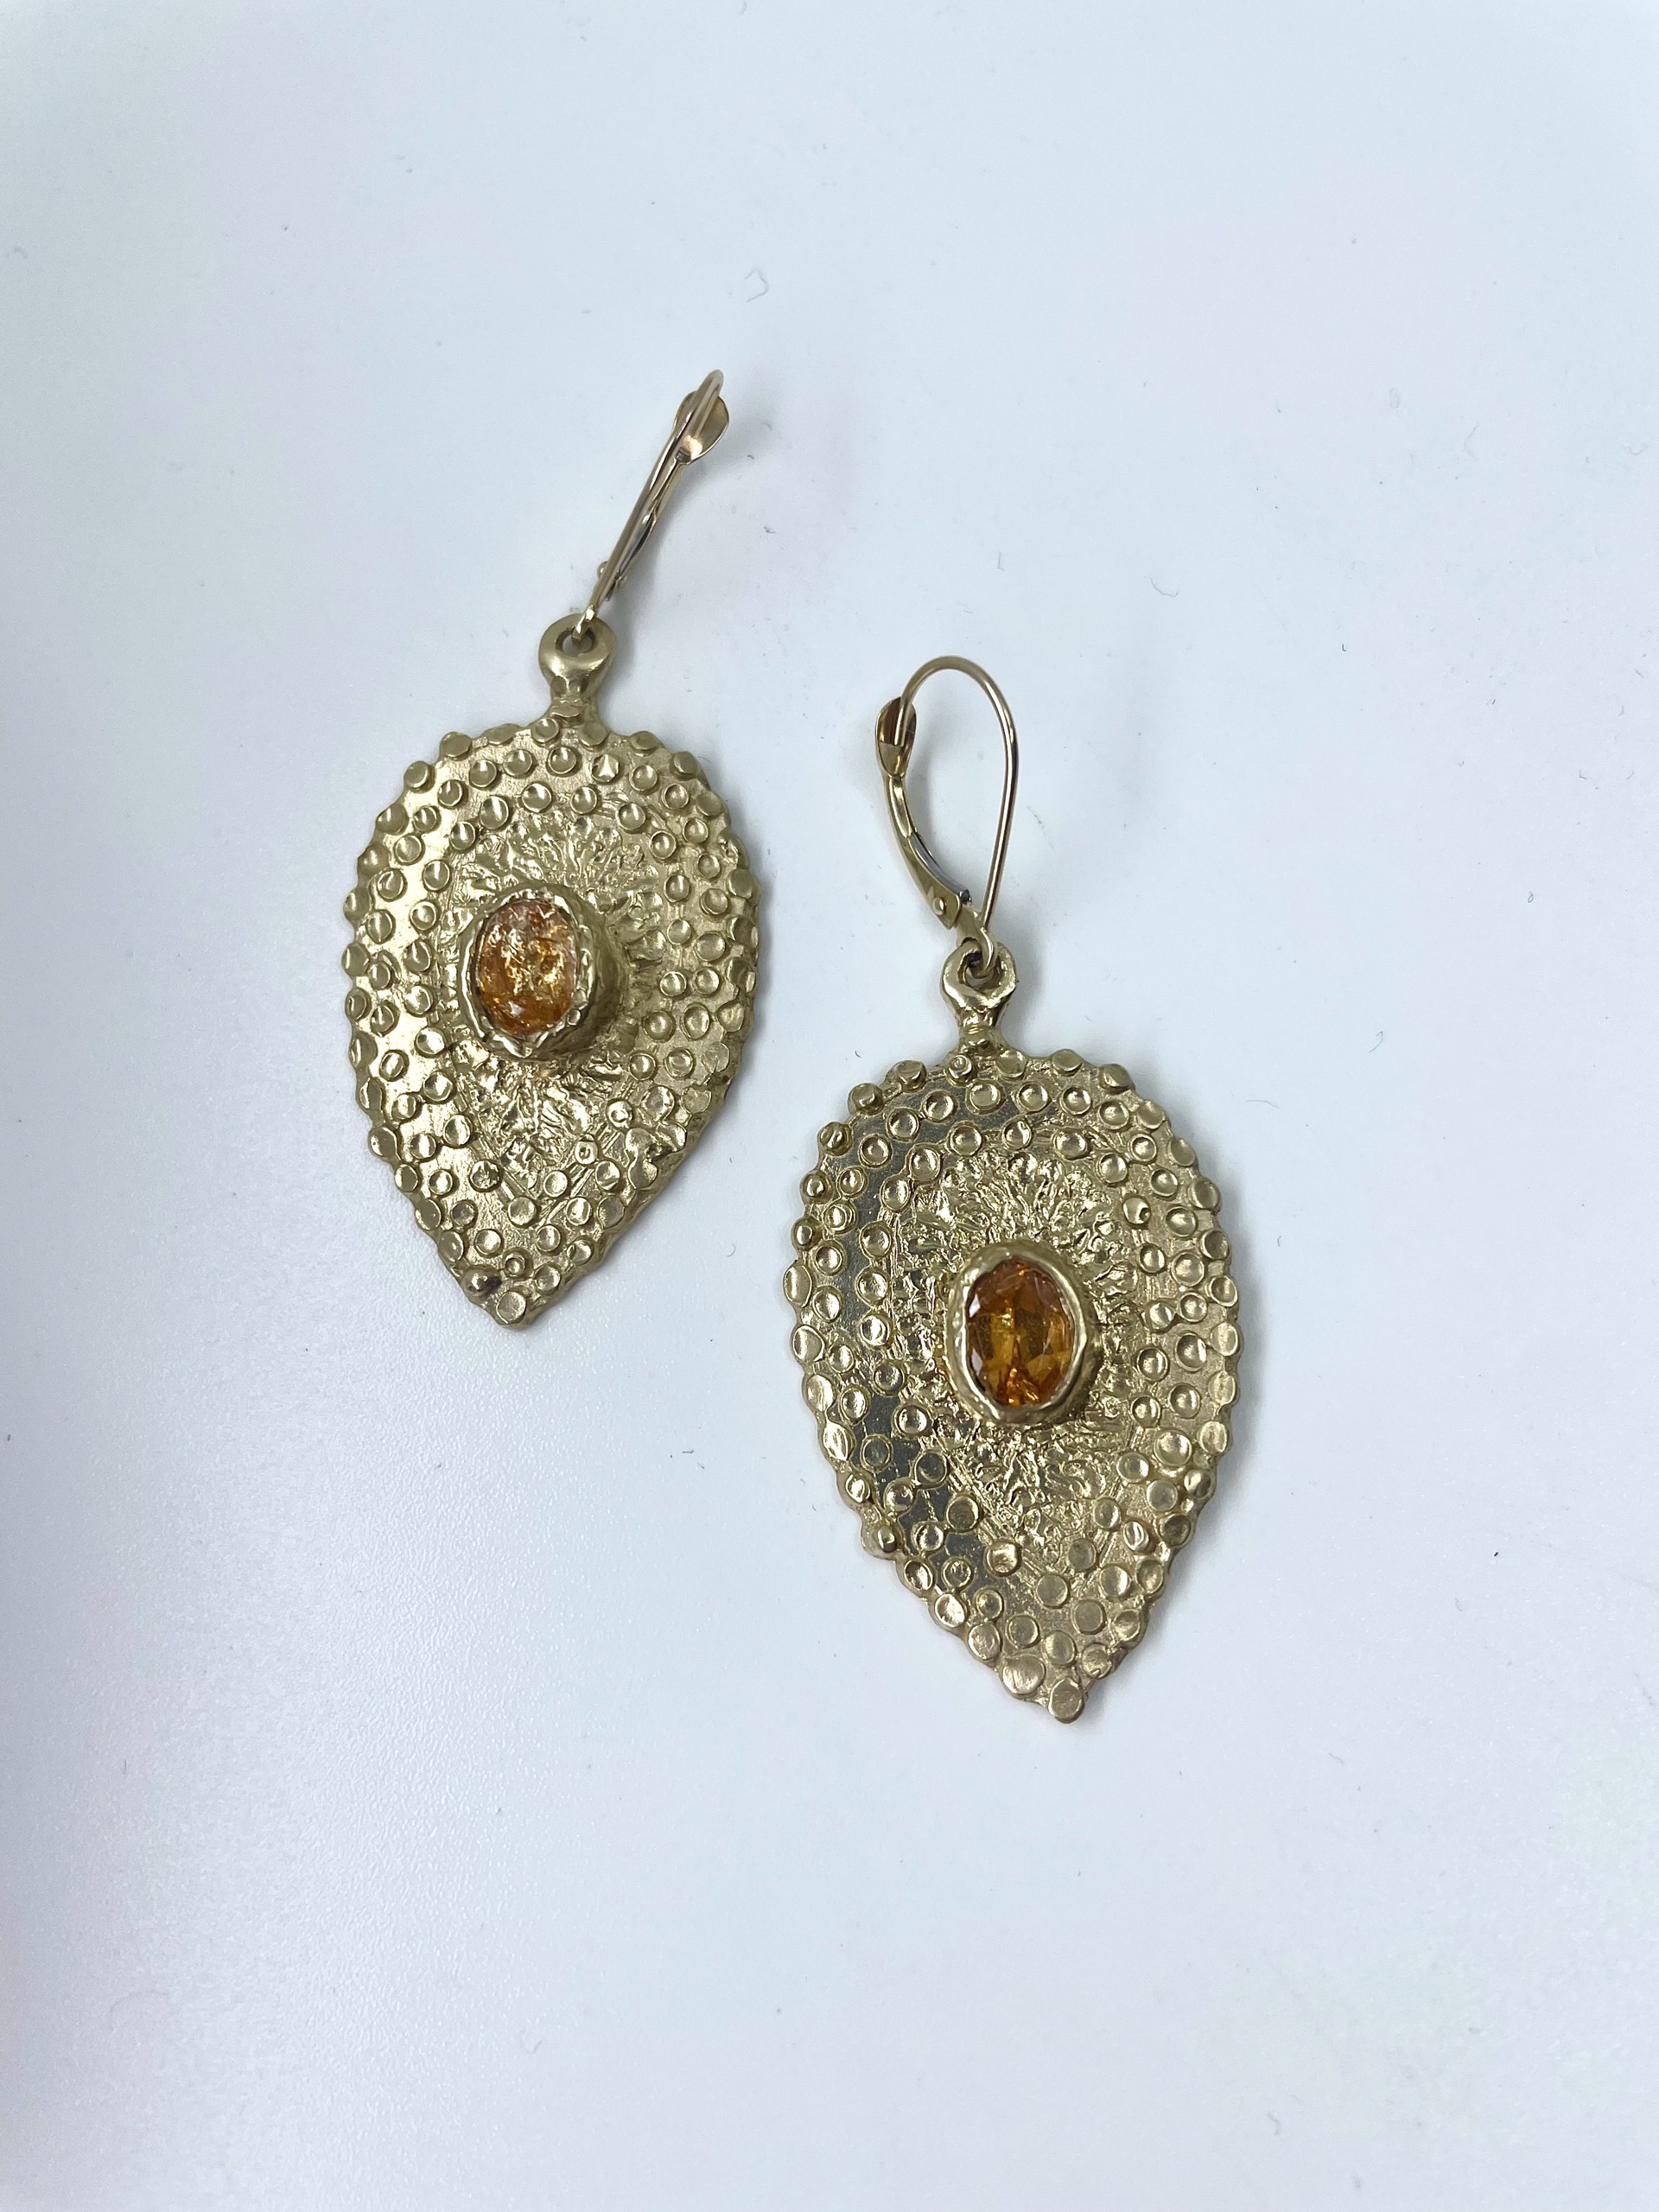 14K Pear Shaped Earrings w/ 2 1ct. Oval Spessartite Garnet by Beth Benowich